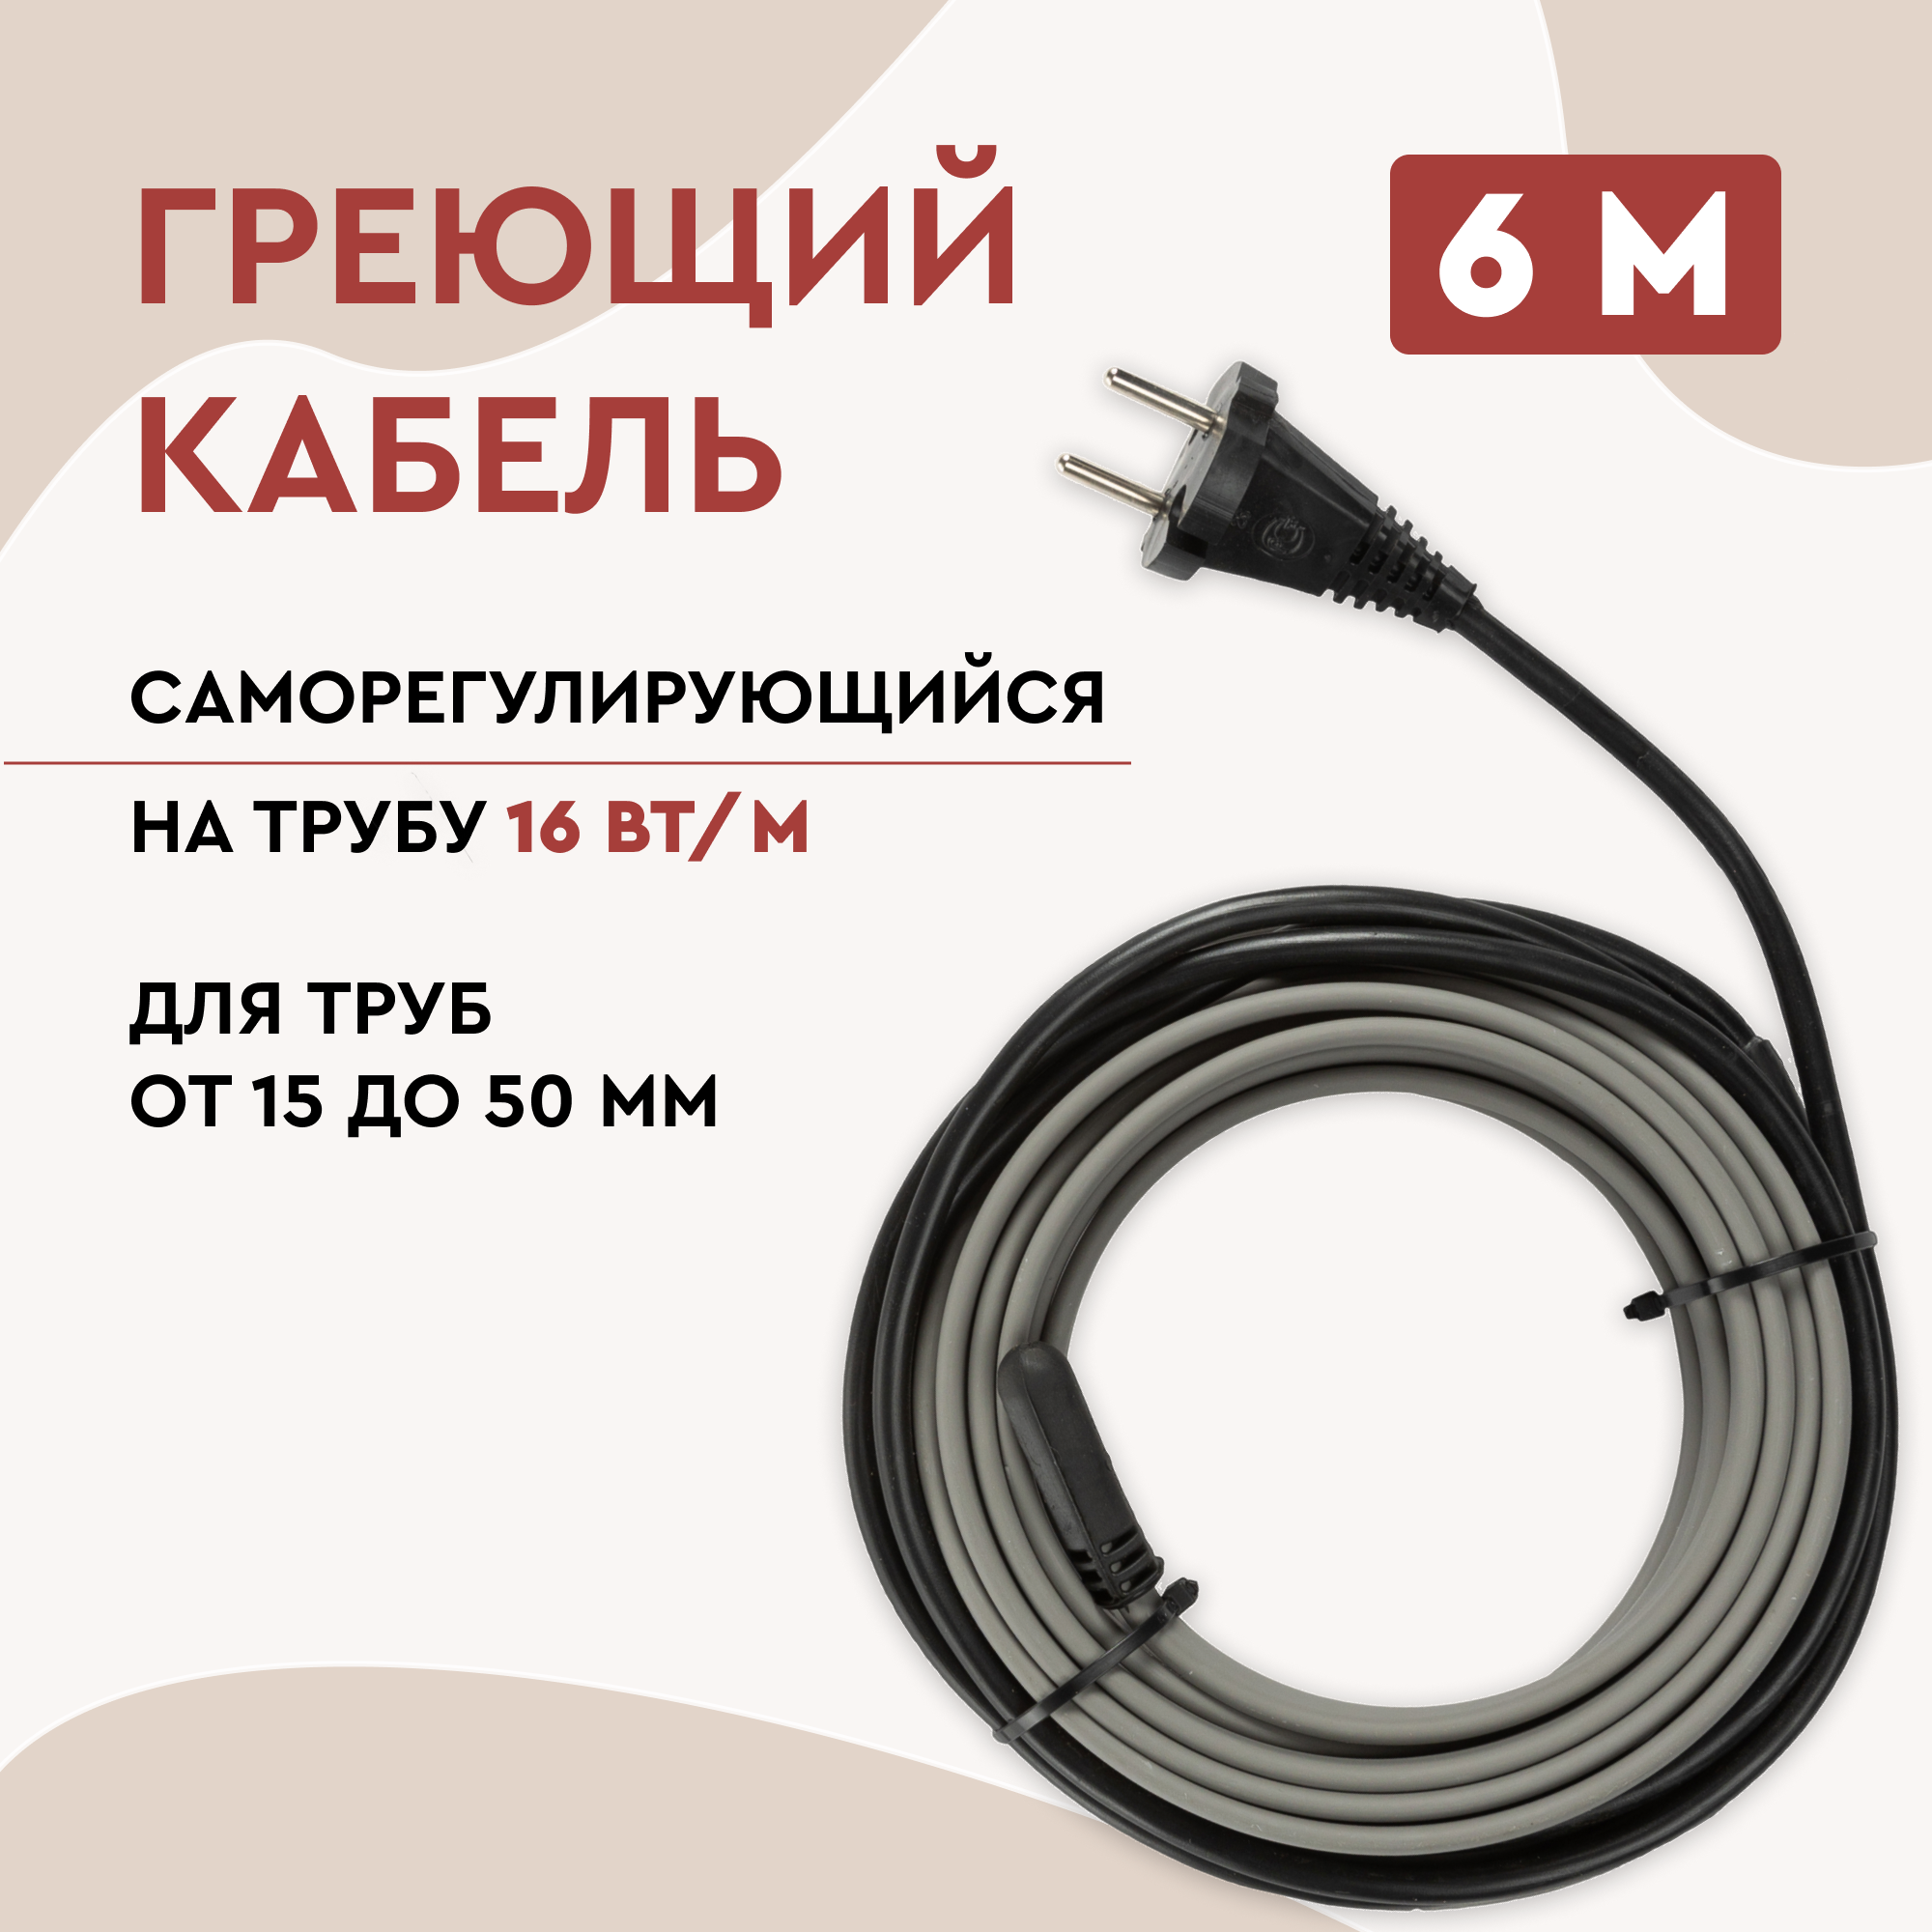 Греющий кабель Lite на трубу 6м 96Вт